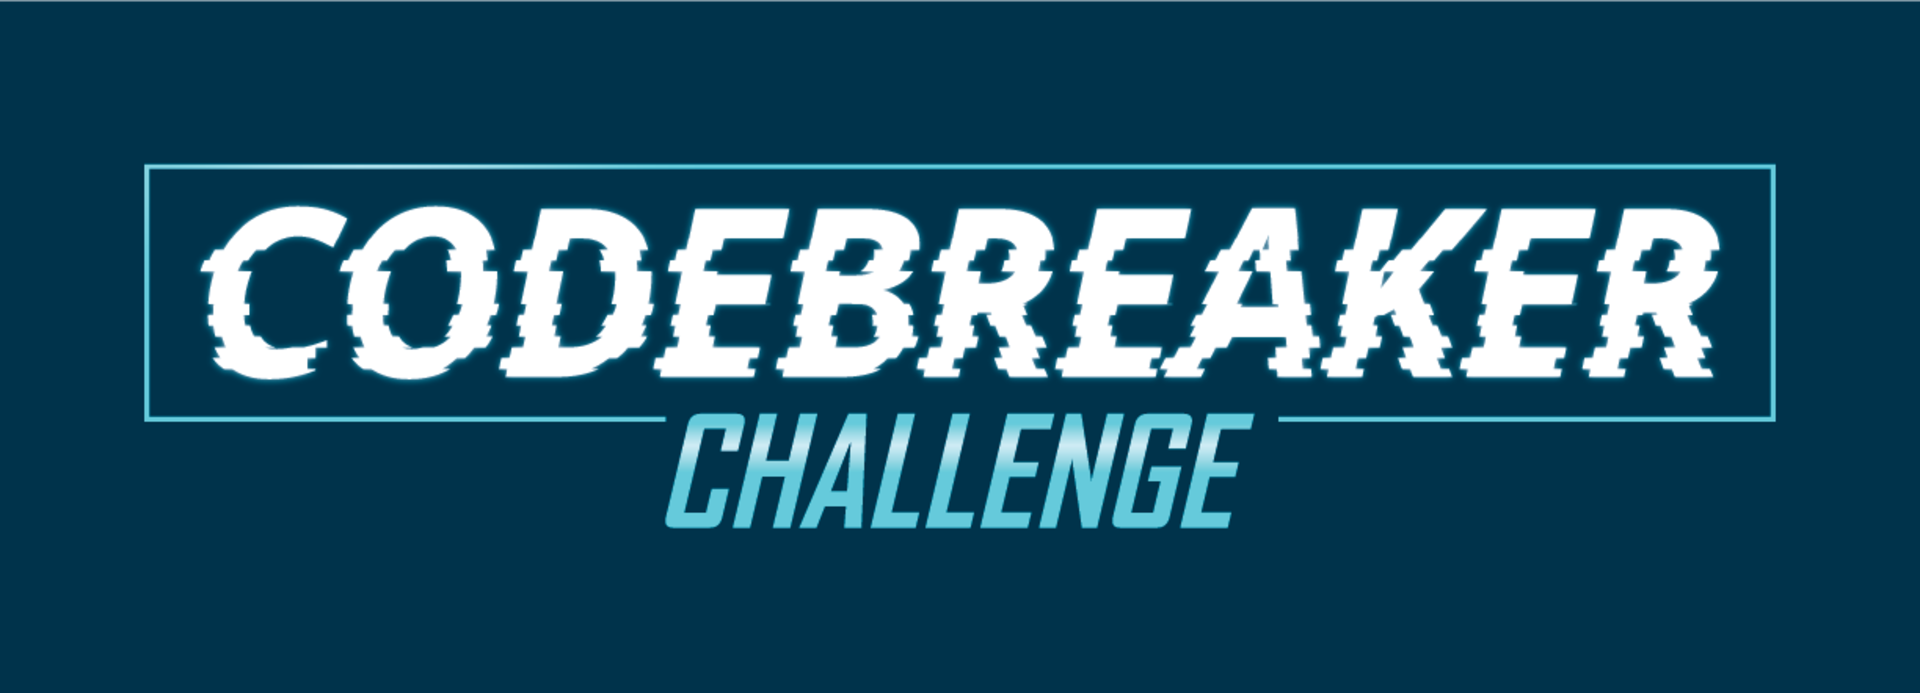 Codebreaker Challenge